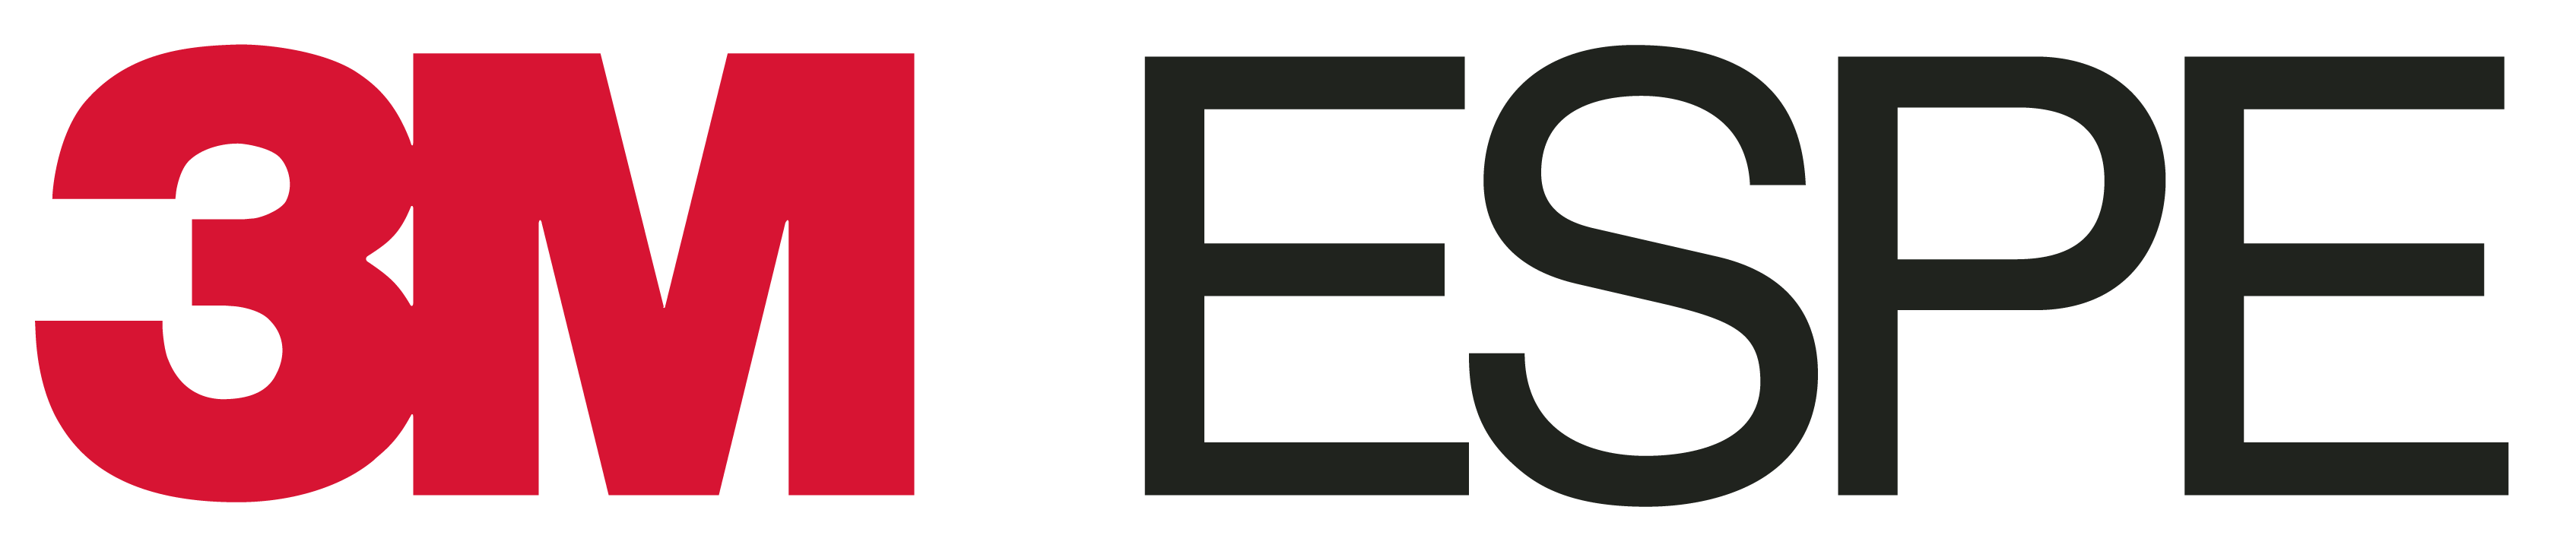 3m Espe-logo